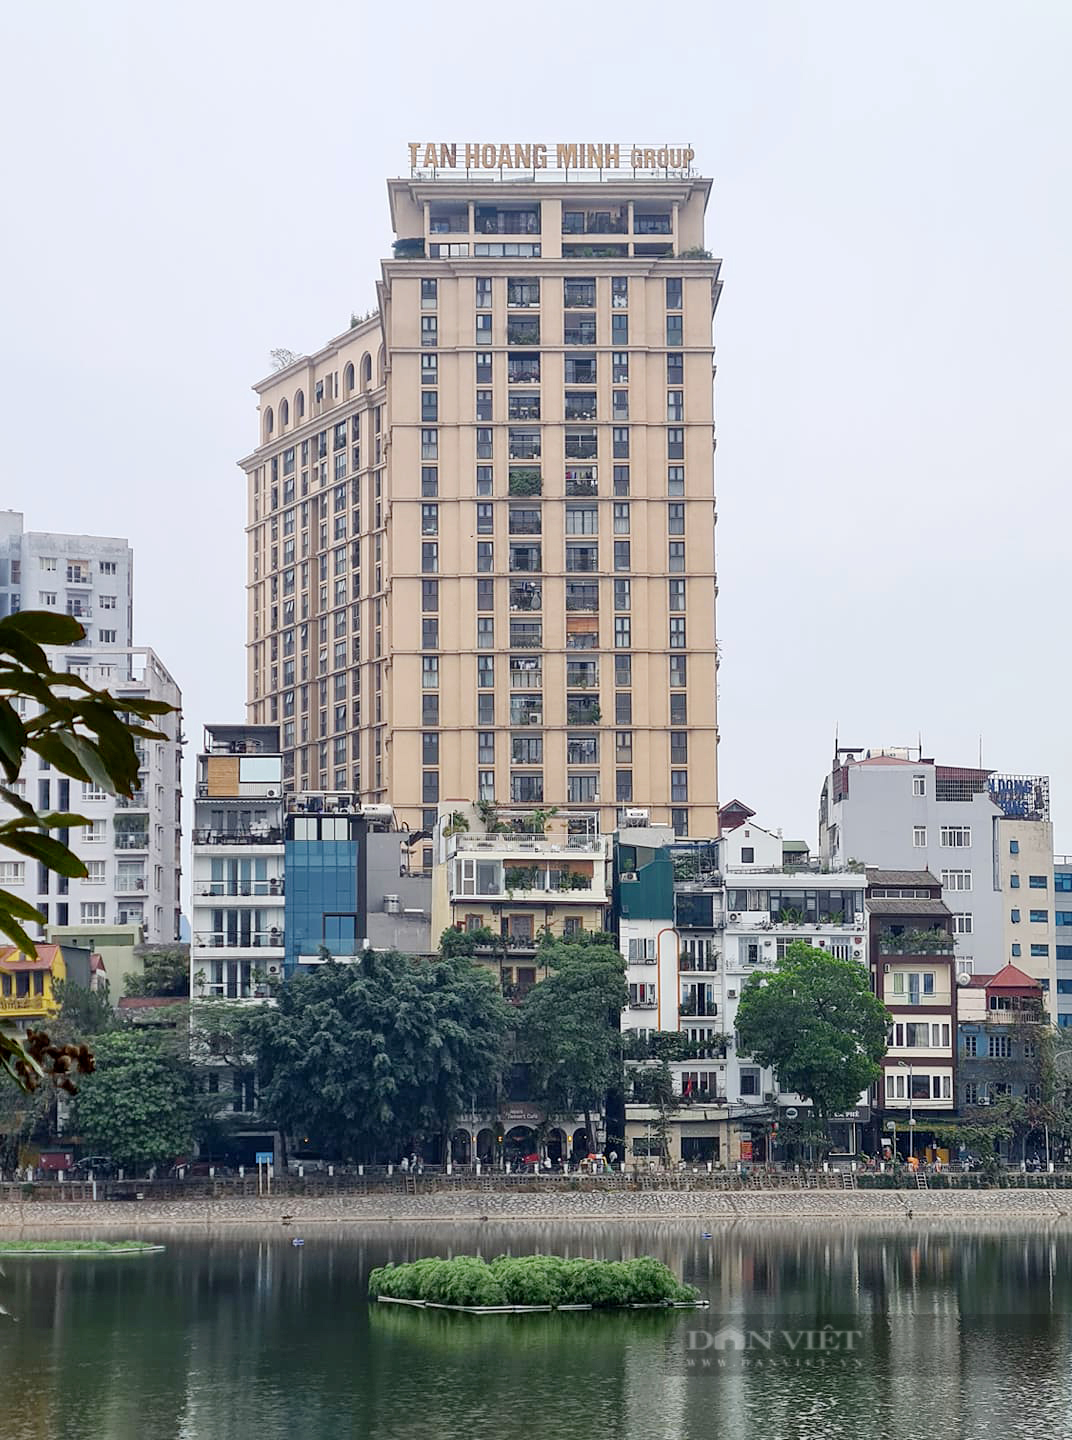 Cận cảnh 11 dự án bất động sản trên 'đất vàng' của Tân Hoàng Minh đang bị điều tra - Ảnh 6.